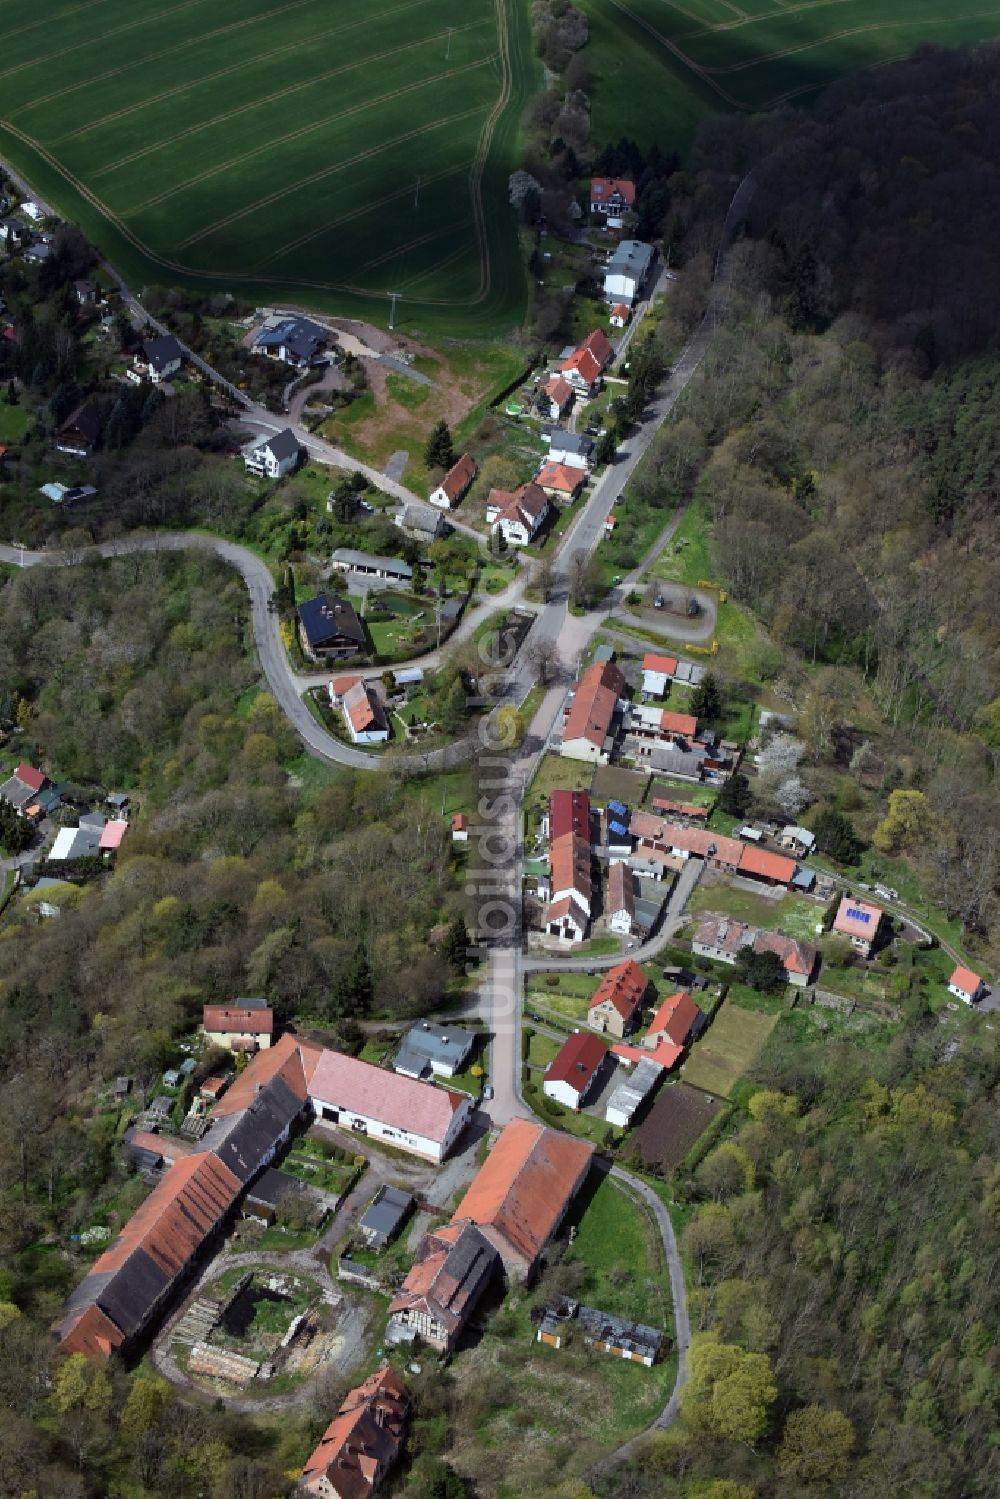 Rammelburg von oben - Dorf - Ansicht von Rammelburg im Bundesland Sachsen-Anhalt